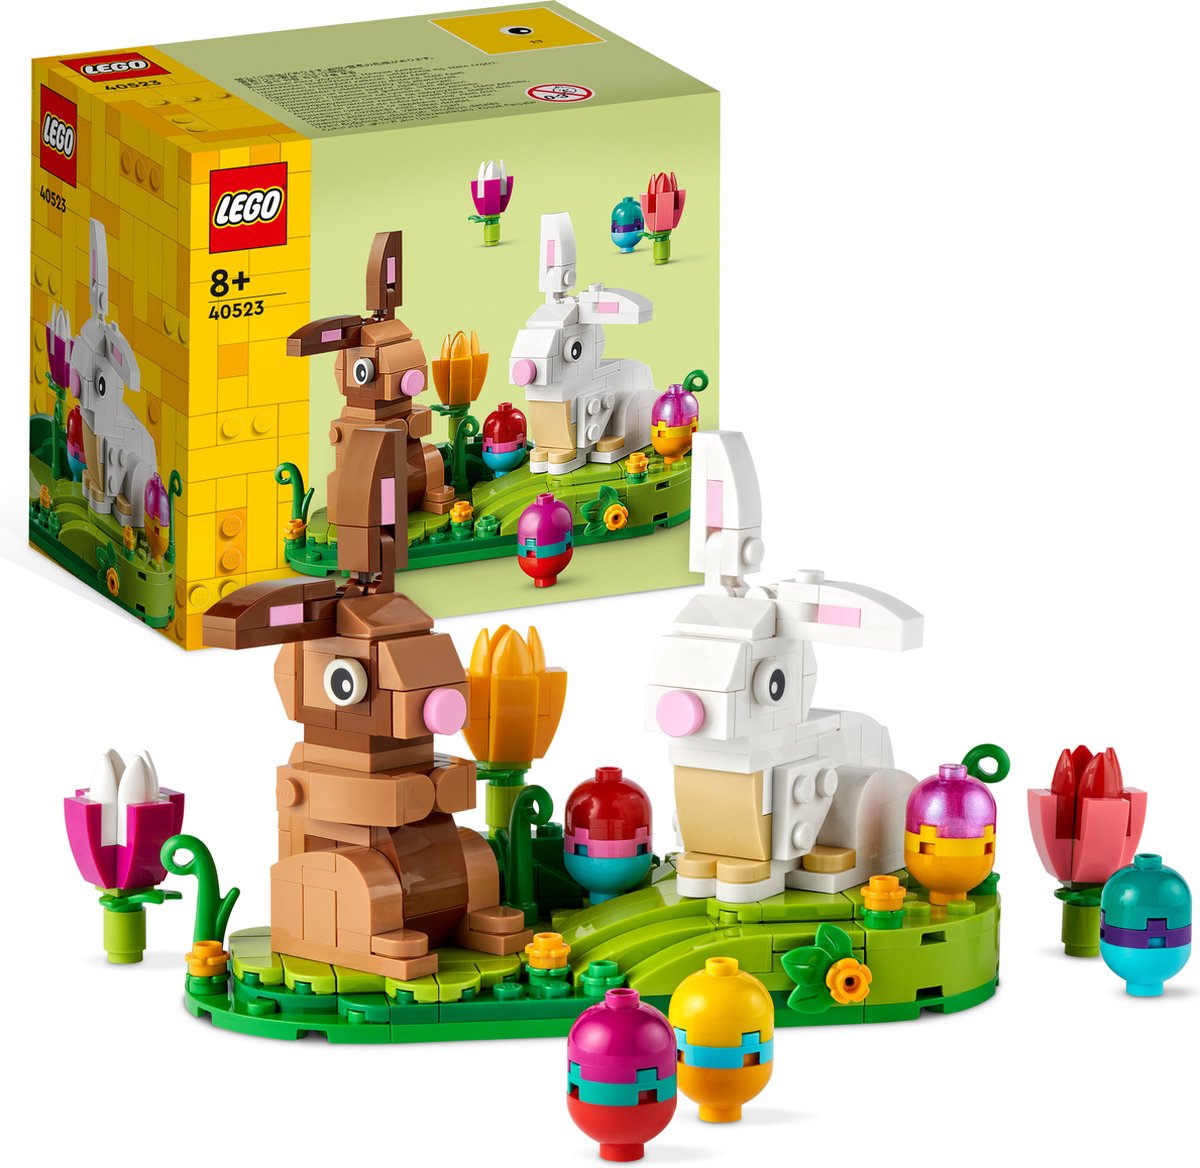 LEGO Exclusifs - Le nid d'oiseau - 40639 - En stock chez